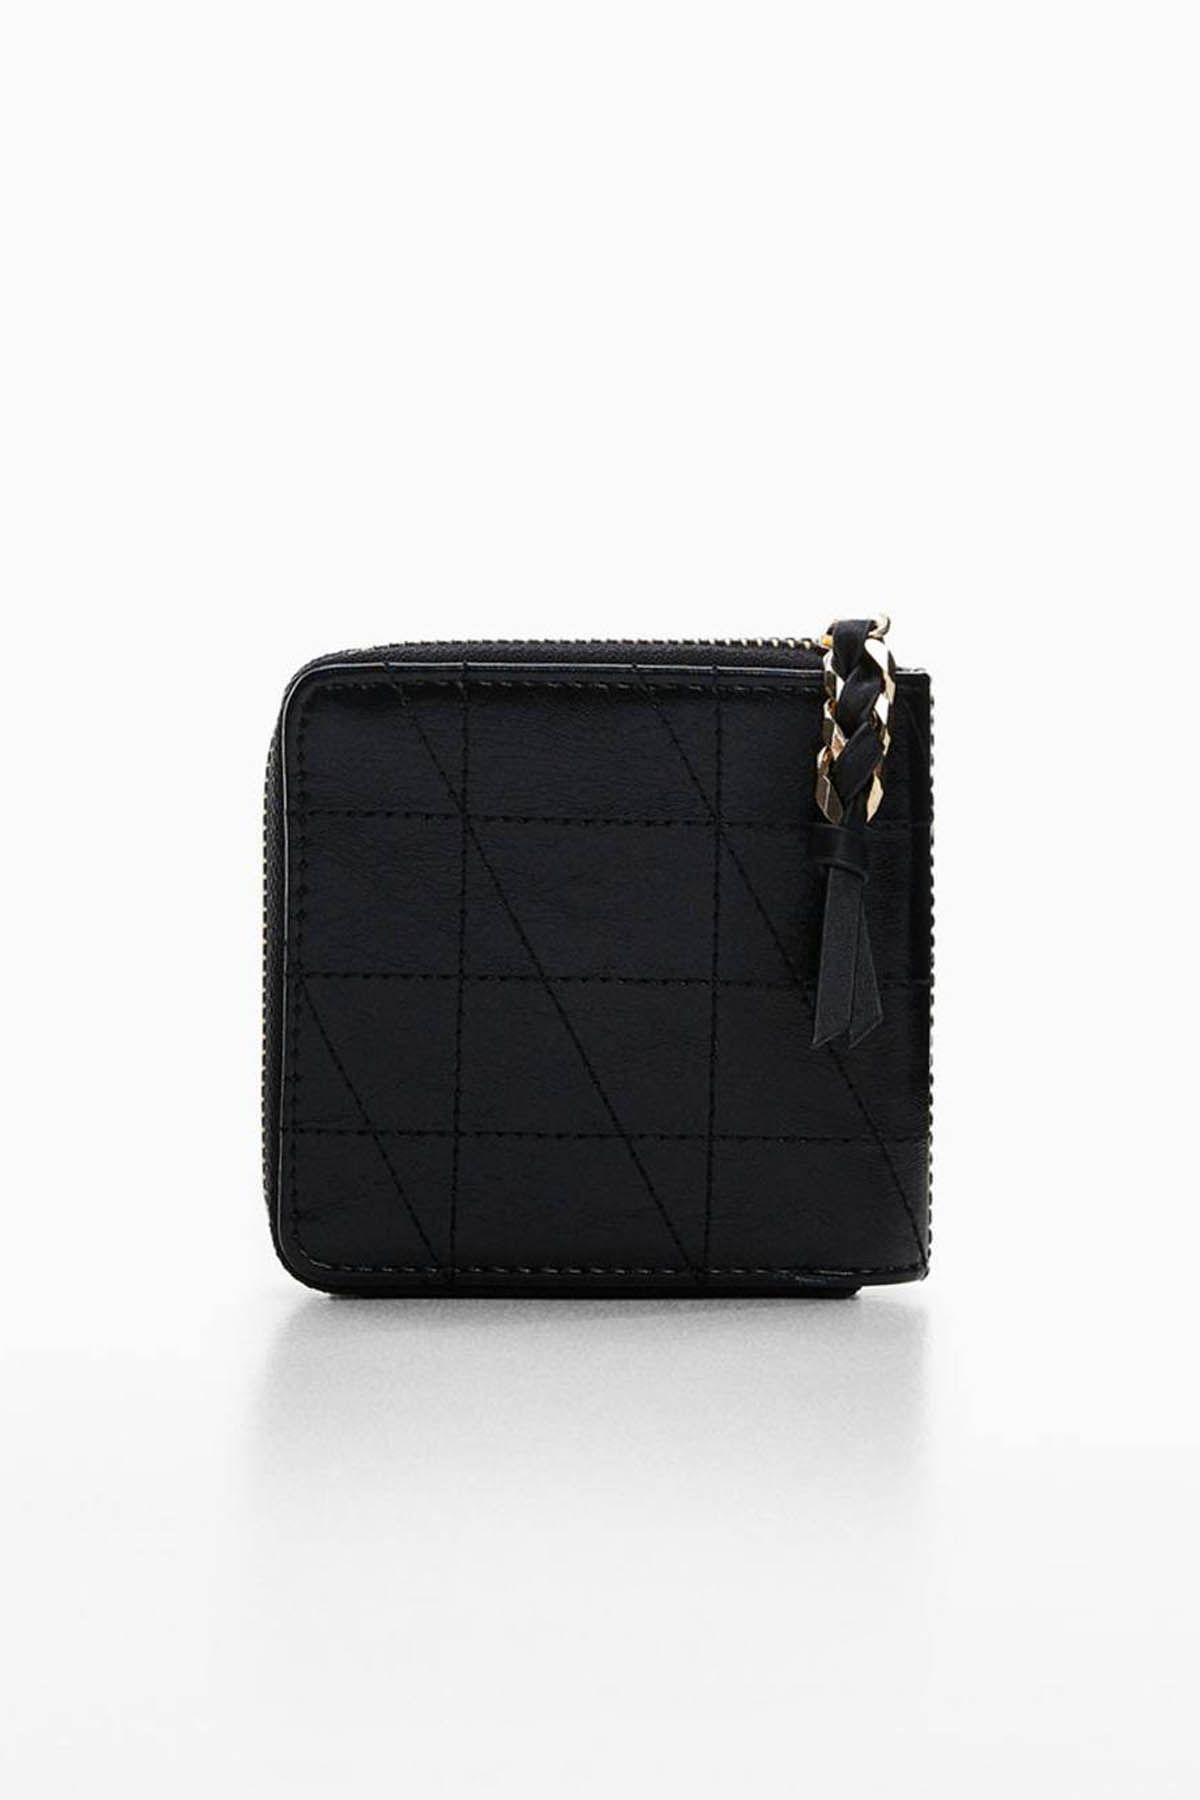 Buy KLEIO Women Black Hand-held Bag Black Online @ Best Price in India |  Flipkart.com